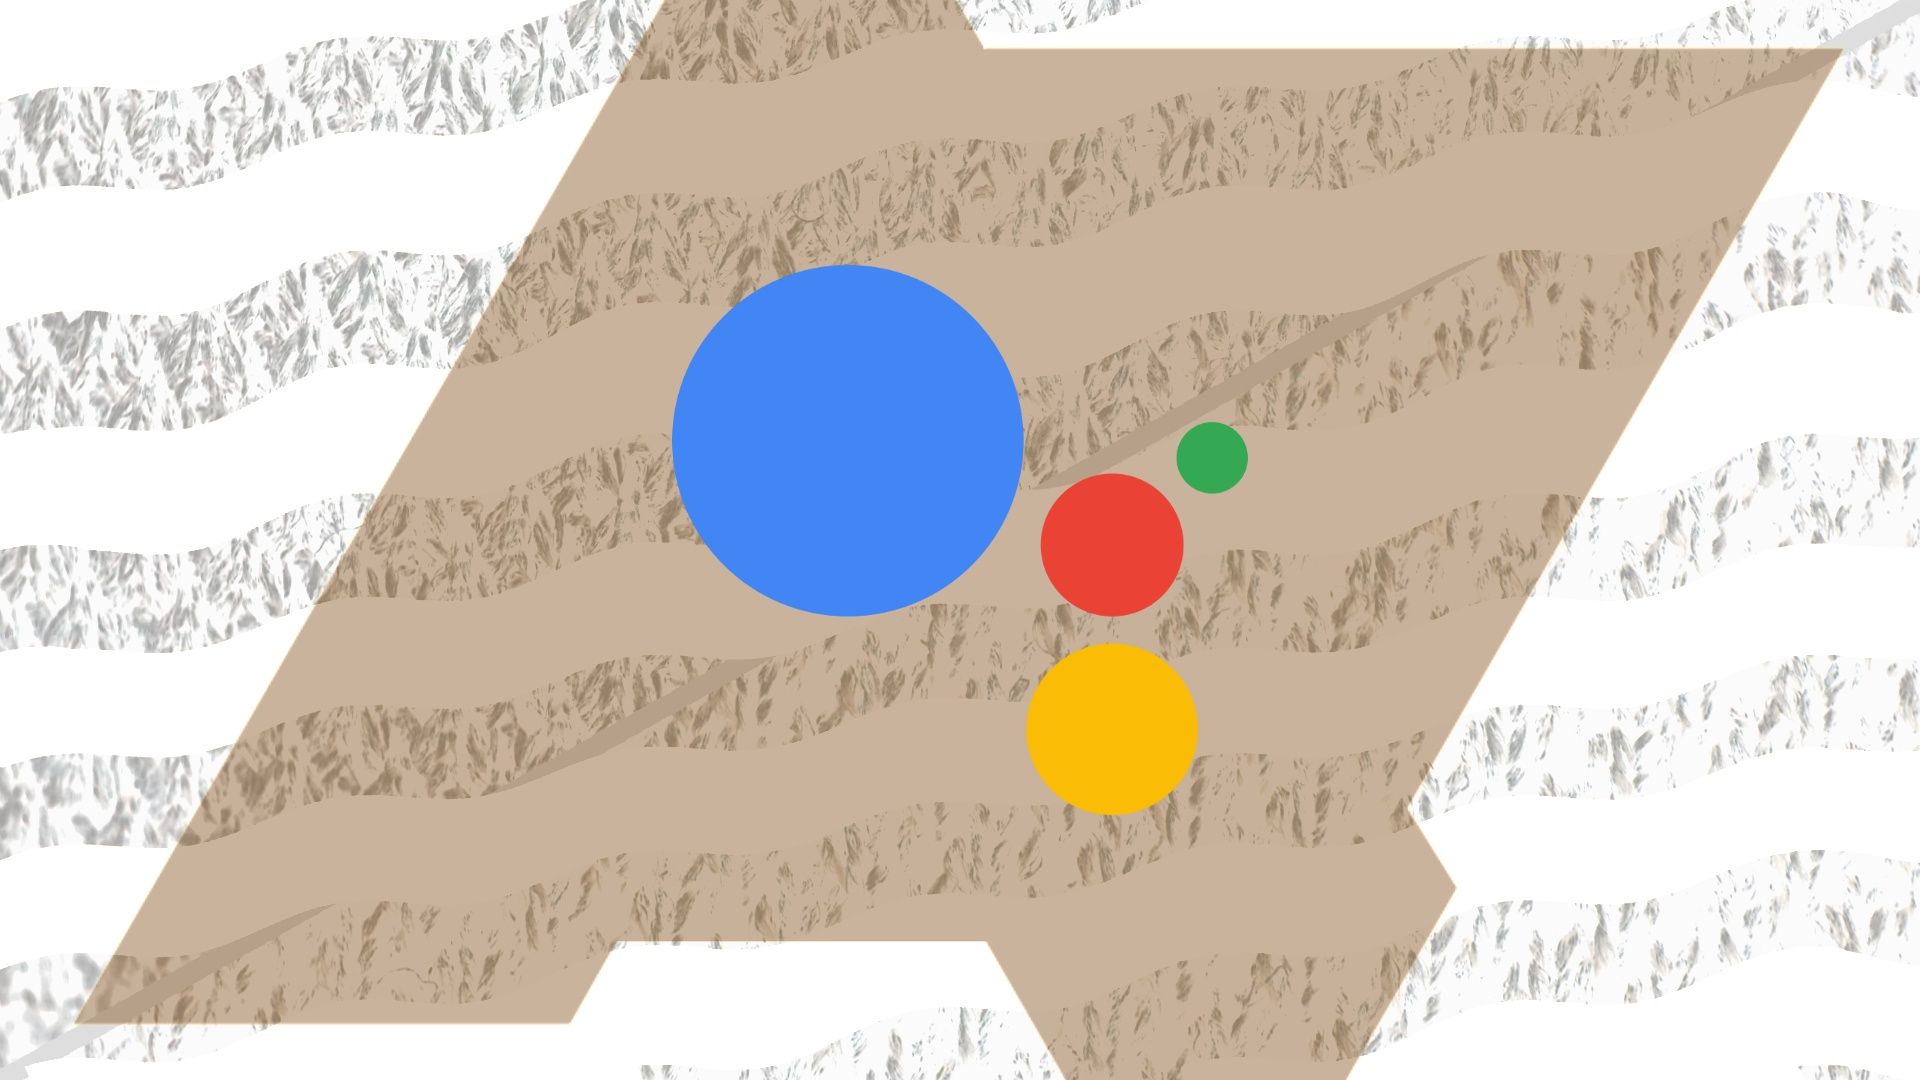 Logo Asisten Google di atas logo Android Police berwarna cokelat di atas latar belakang bergelombang bergaris putih dan hitam putih